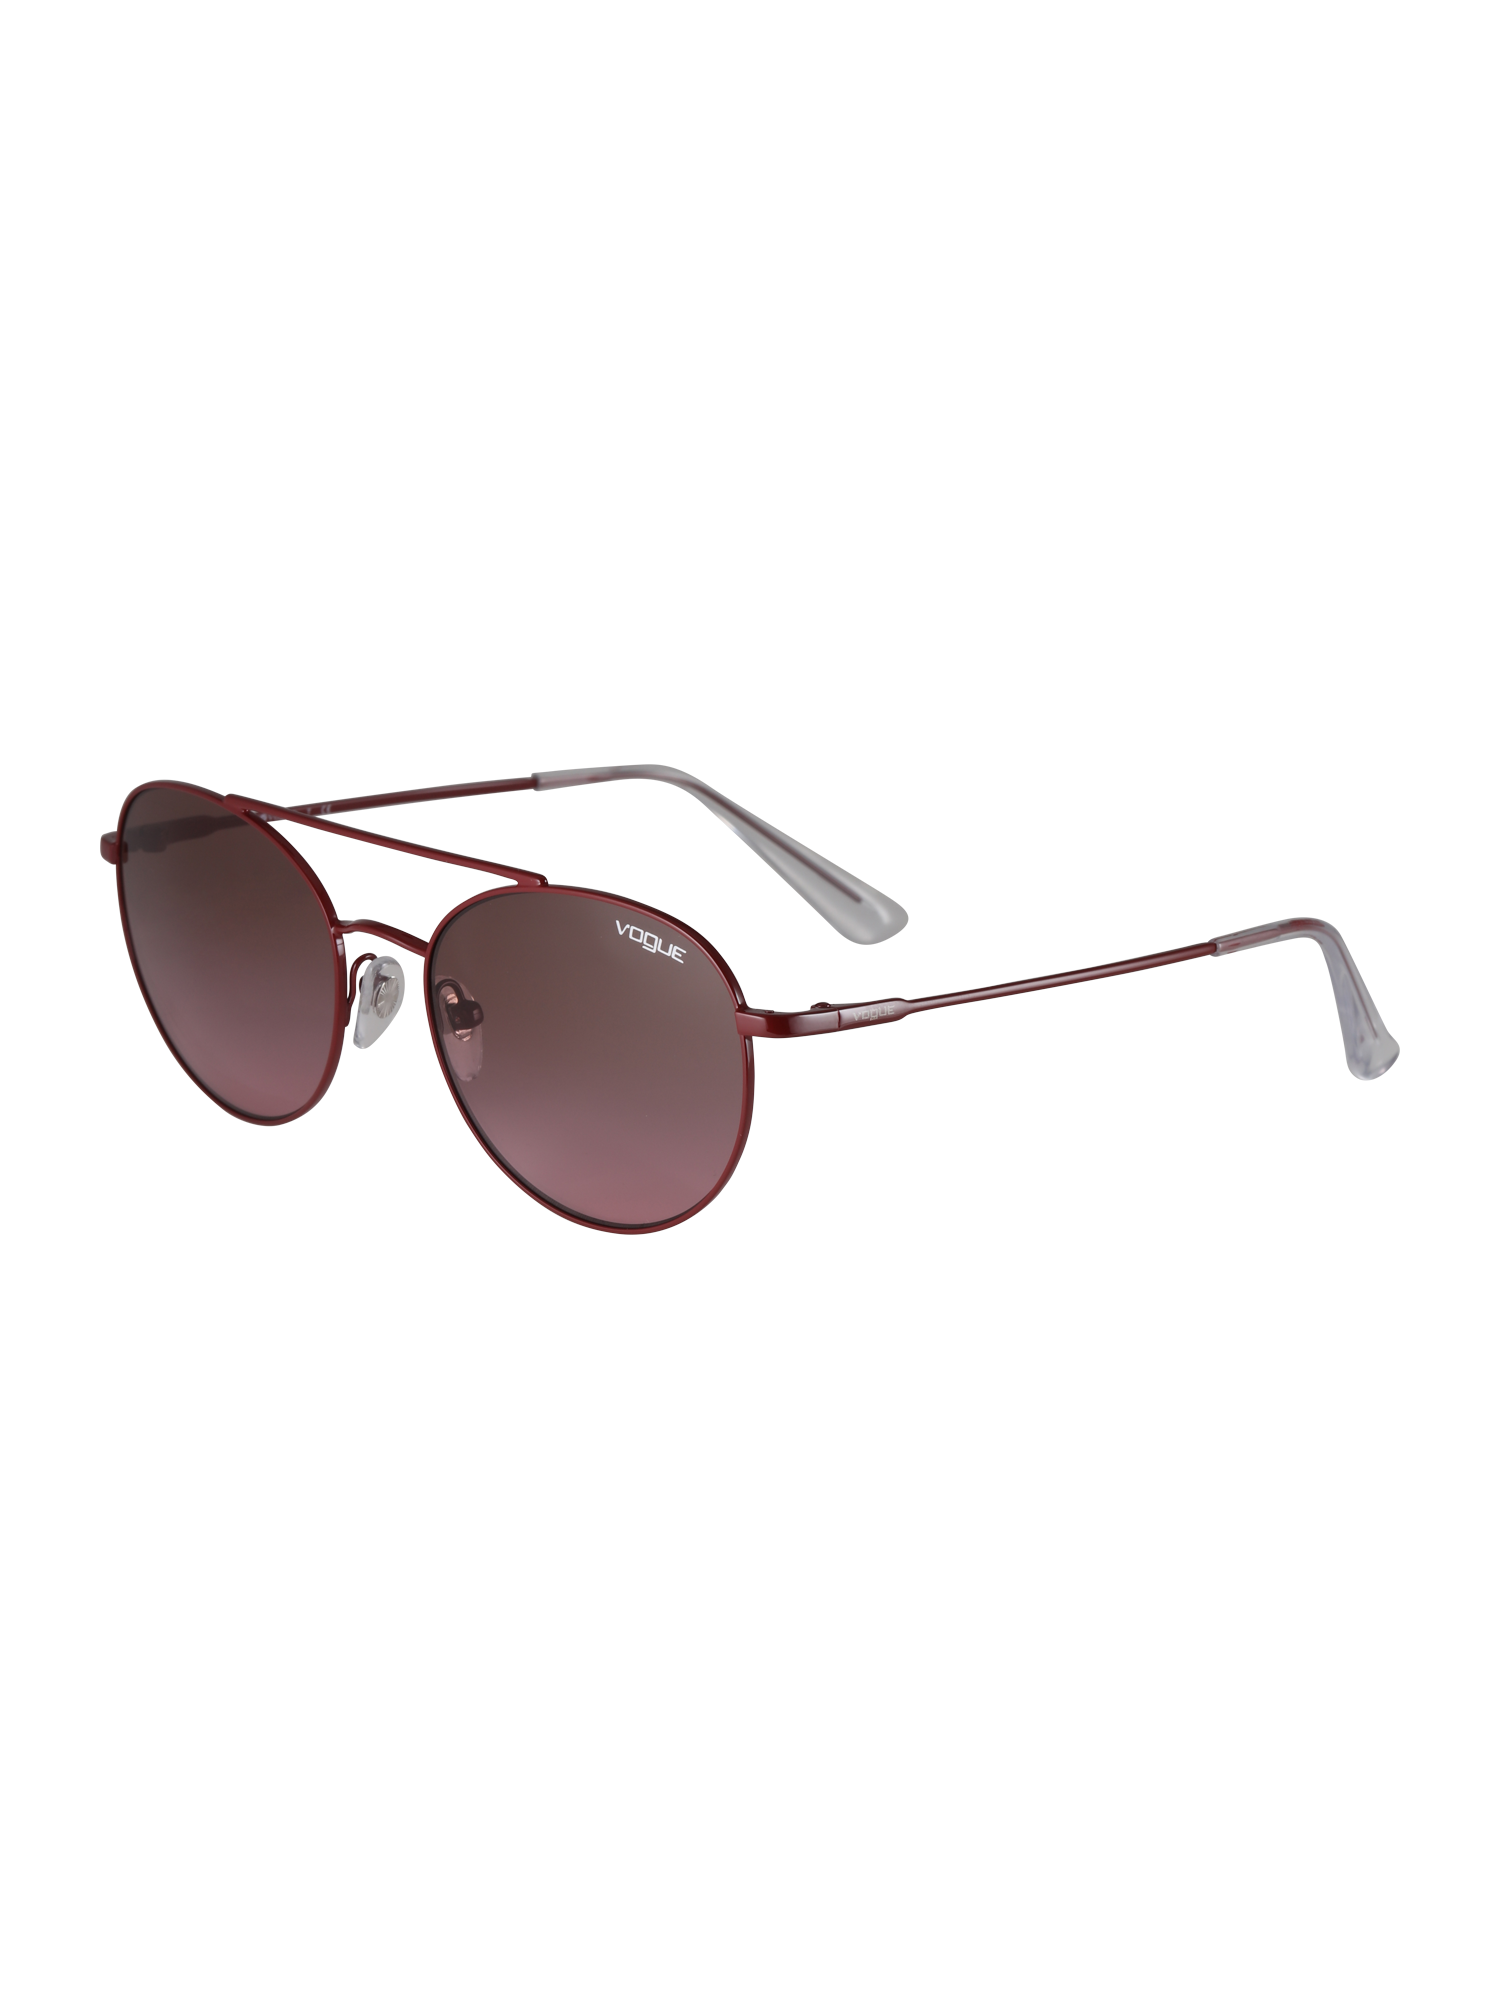 Accessori NX36c VOGUE Eyewear Sonnenbrille in Rosso Sangue 